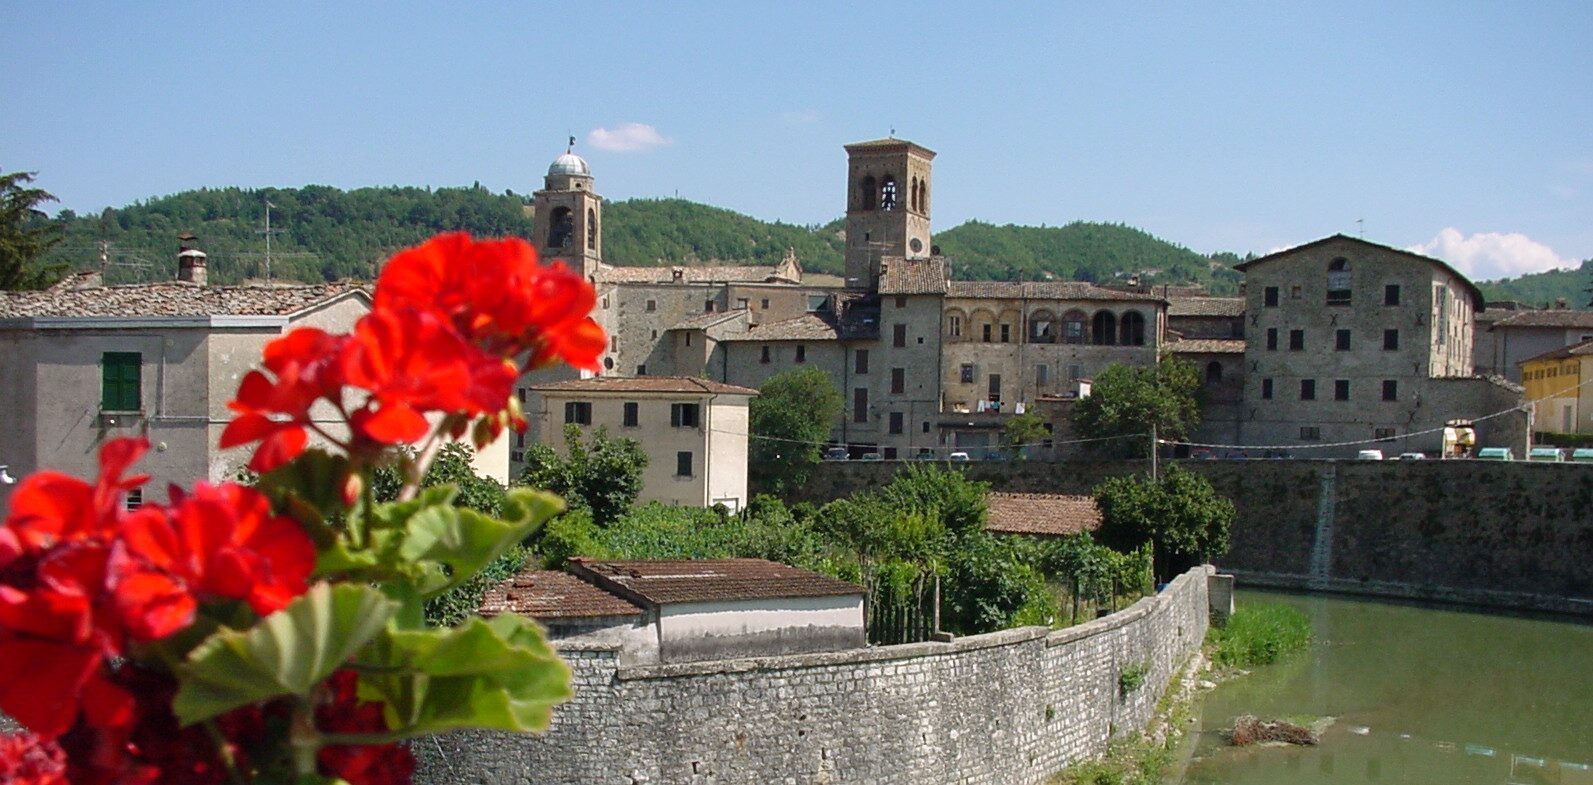 La petite ville de Sant'Angelo in Vado (centre de l'Italie), dans laquelle le prêtre soupçonné d'abus possède une maison | © joergsam/wikimedia commons/CC BY-SA 3.0